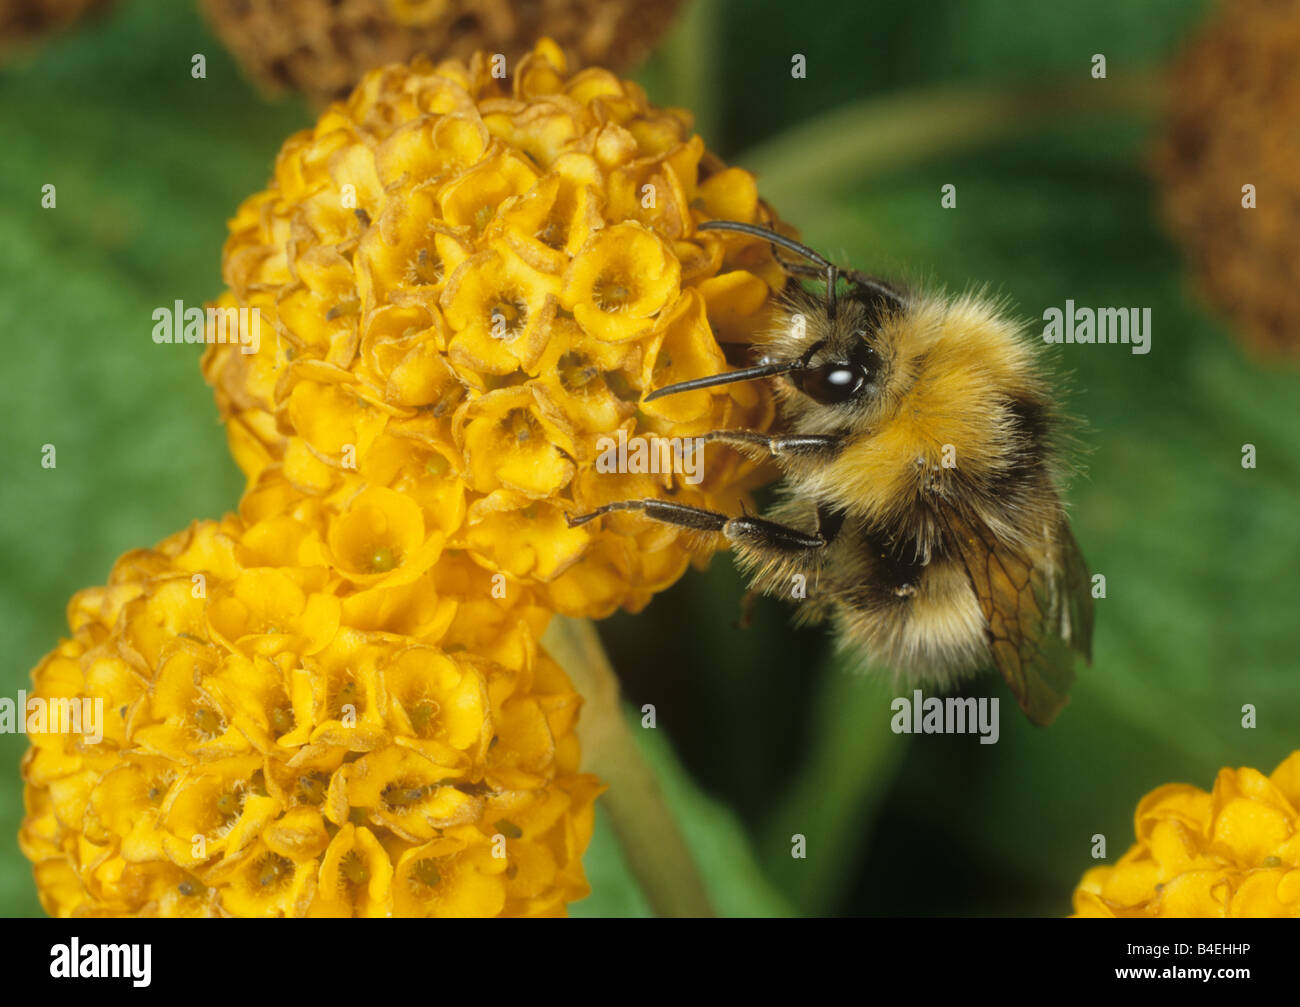 Bumblebee Bombus hortorum feeding on Buddleia Buddleja globosa flowerhead Stock Photo